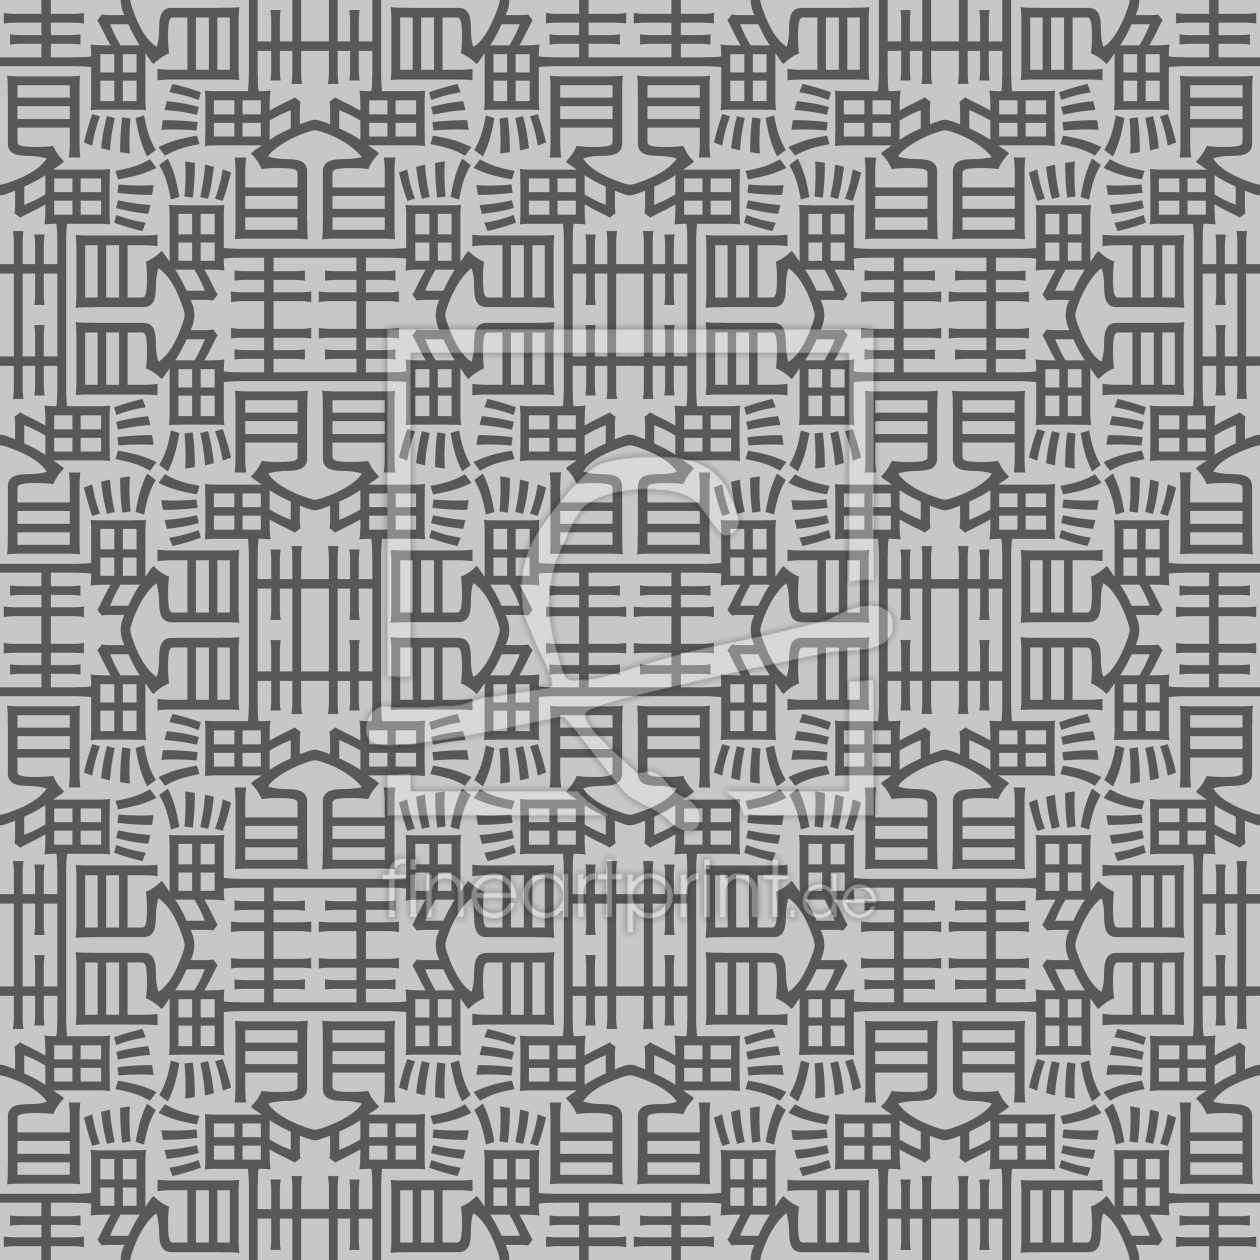 Bild-Nr.: 9015401 Asiatische Zeichen erstellt von patterndesigns-com